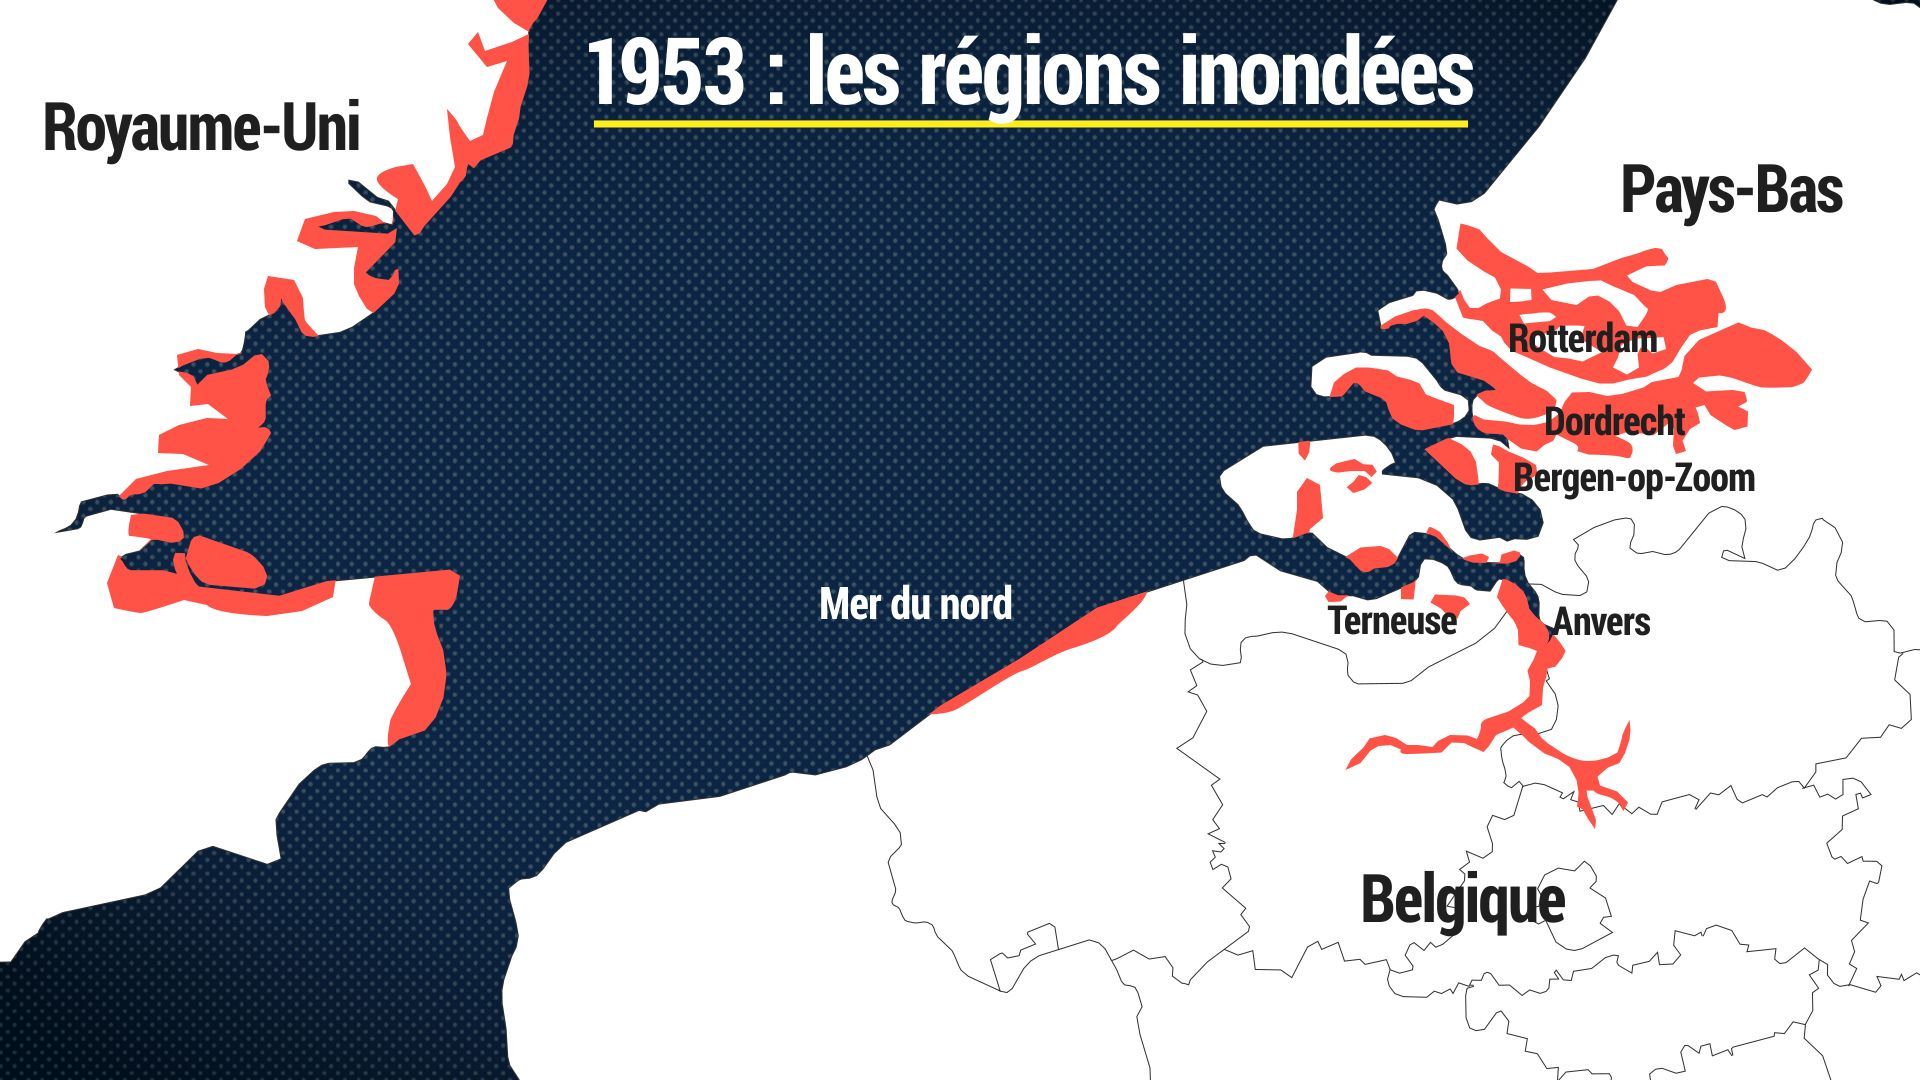 Les régions inondées en 1953 aux Pays-Bas, en Belgique et en Angleterre